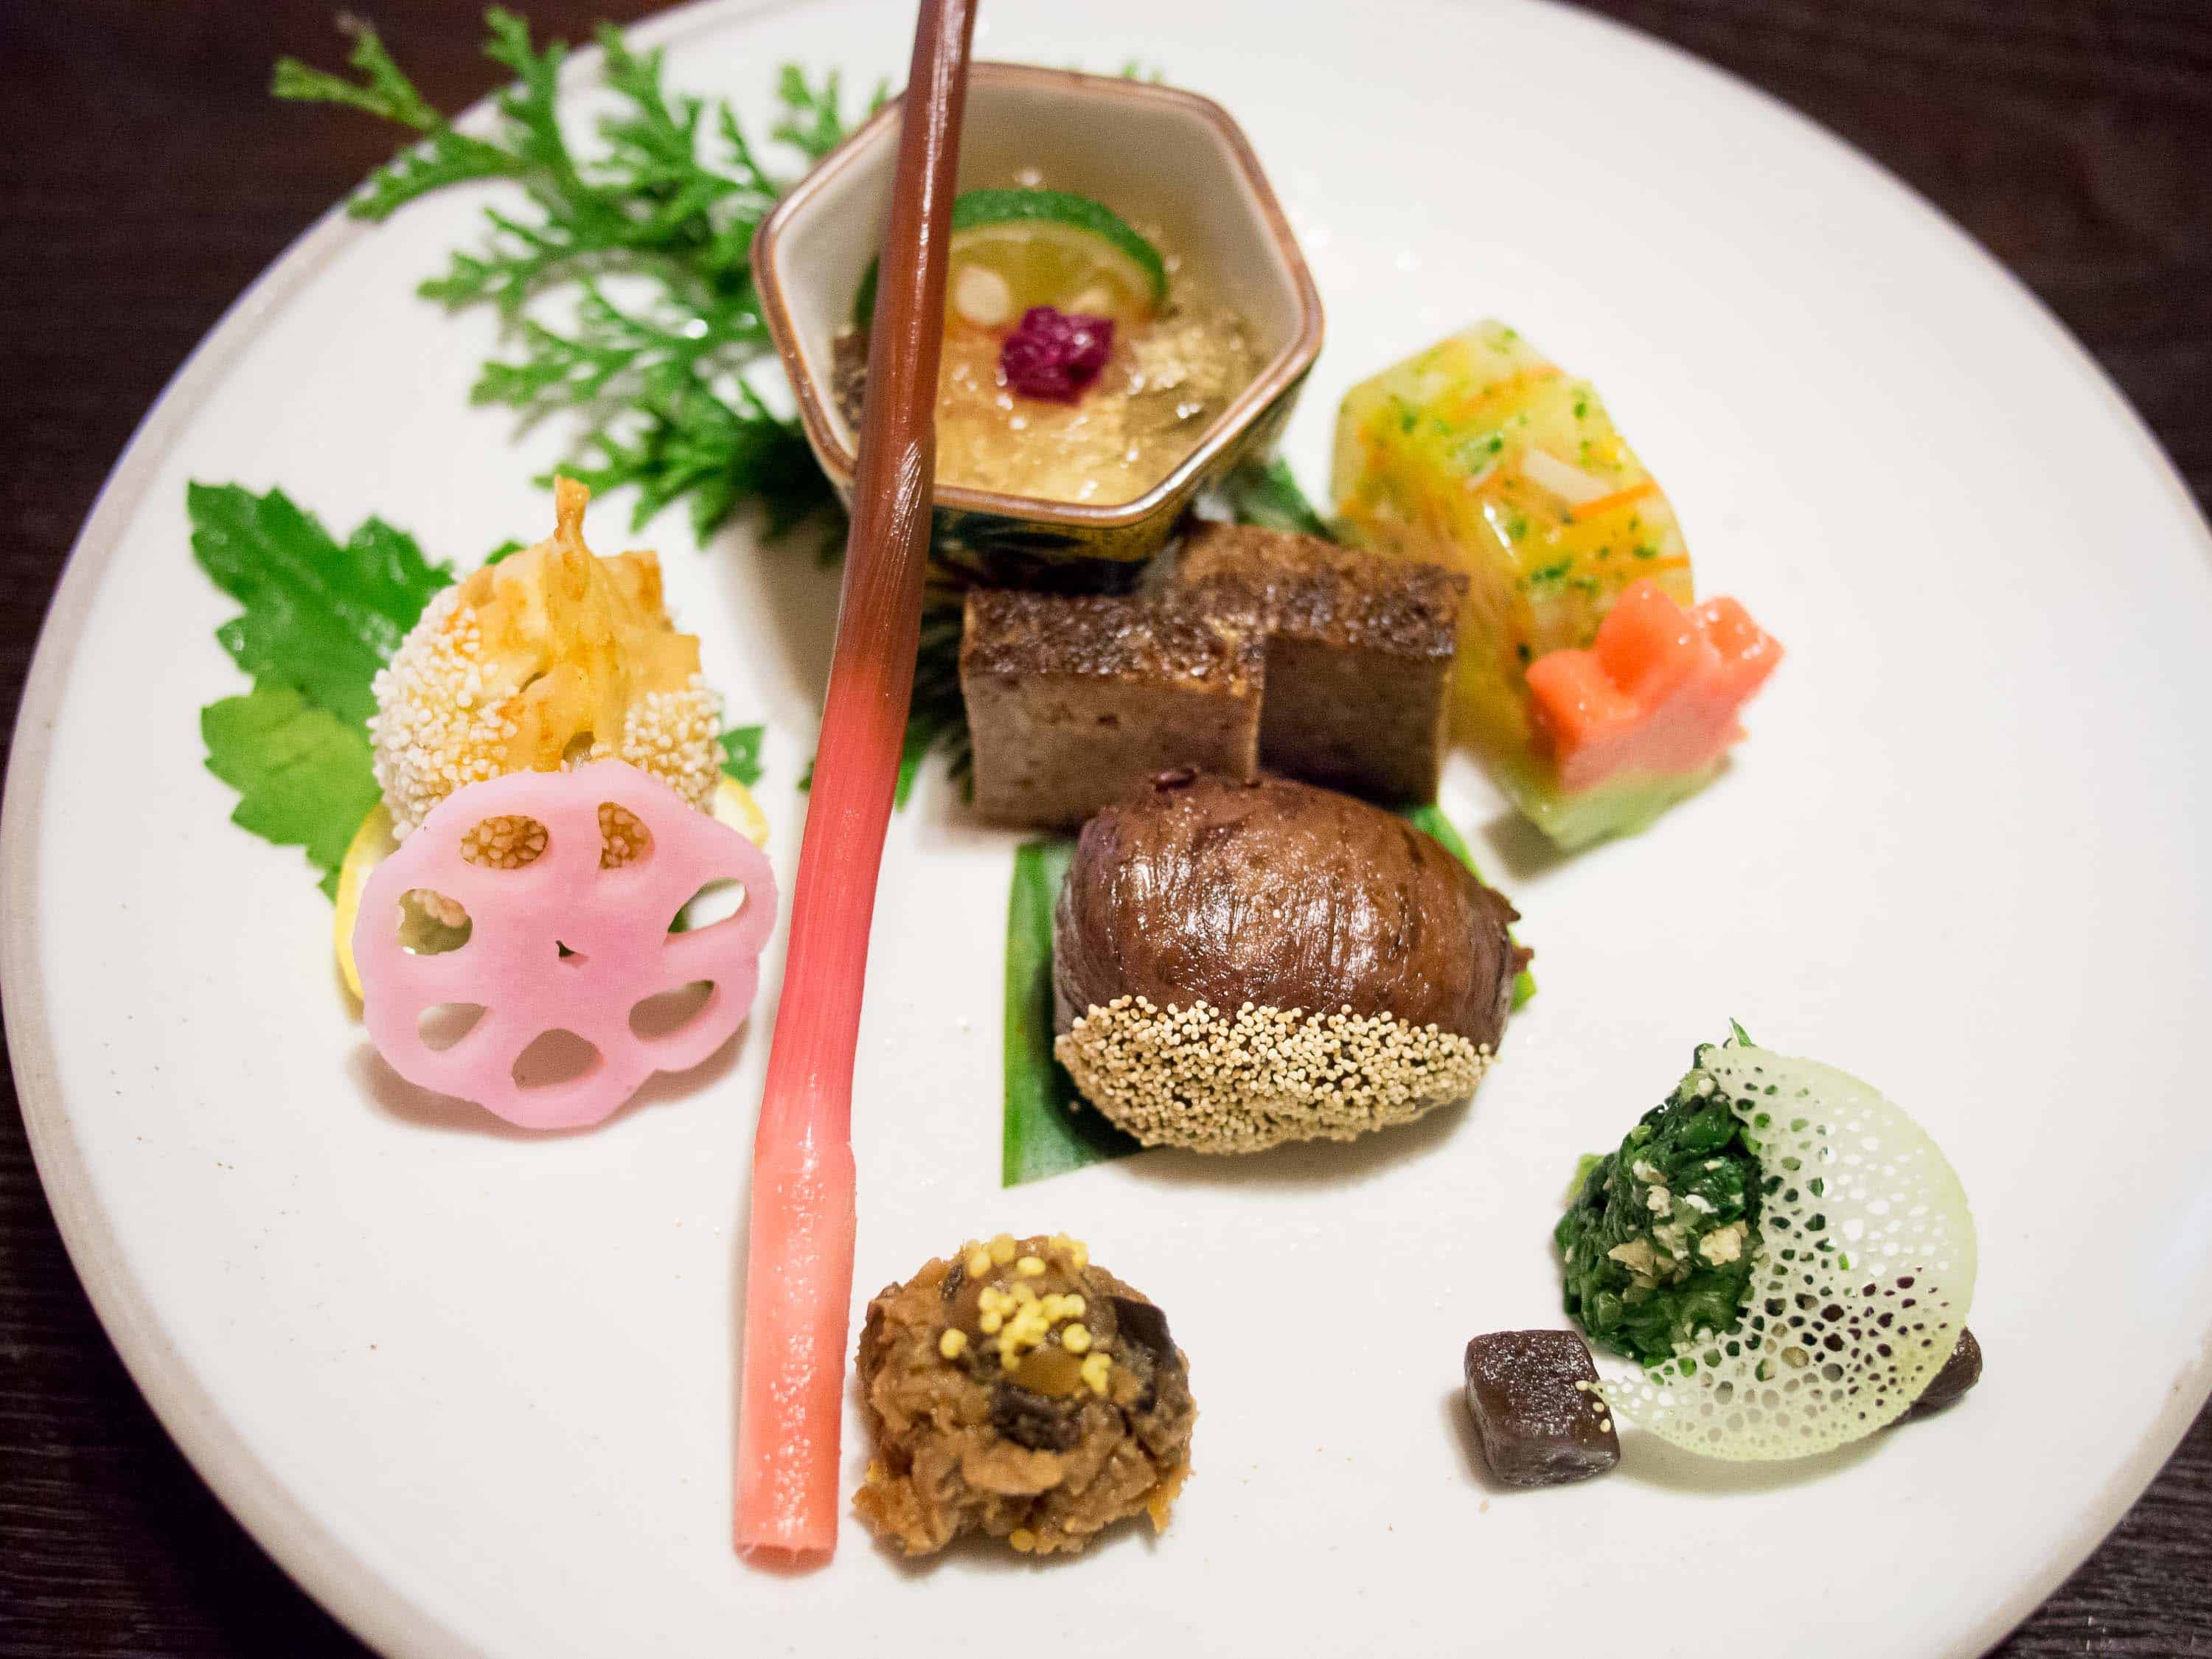 13 best restaurants in Tokyo